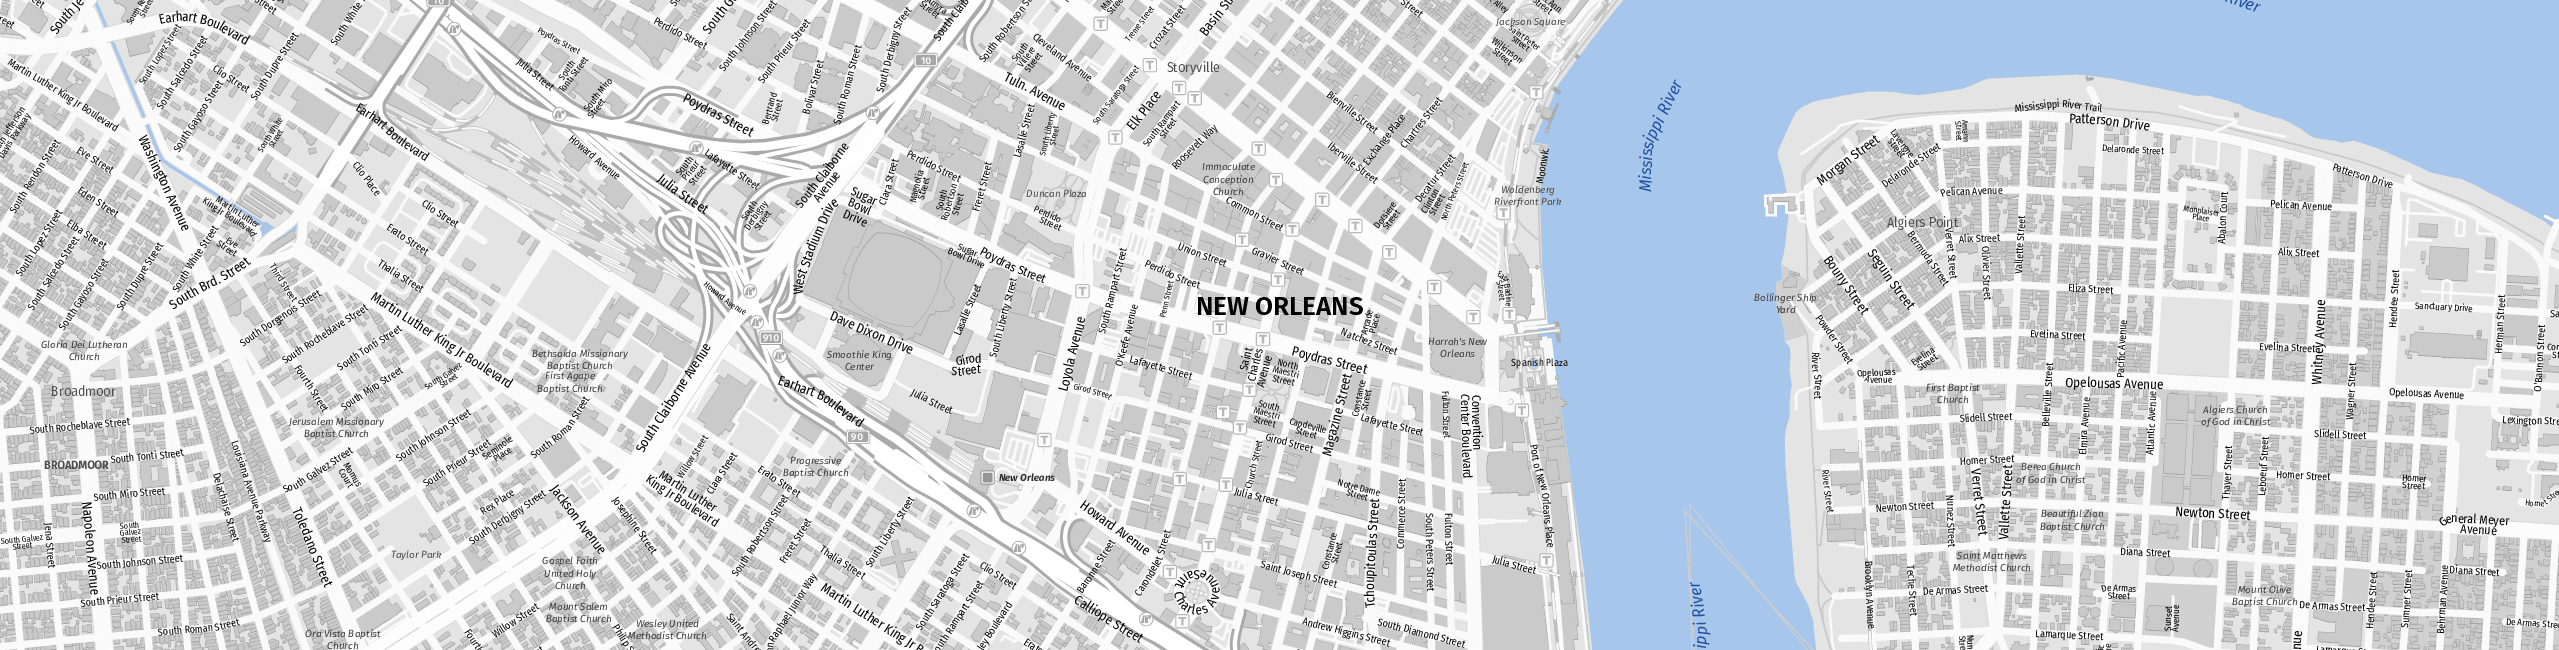 Stadtplan New Orleans zum Downloaden.